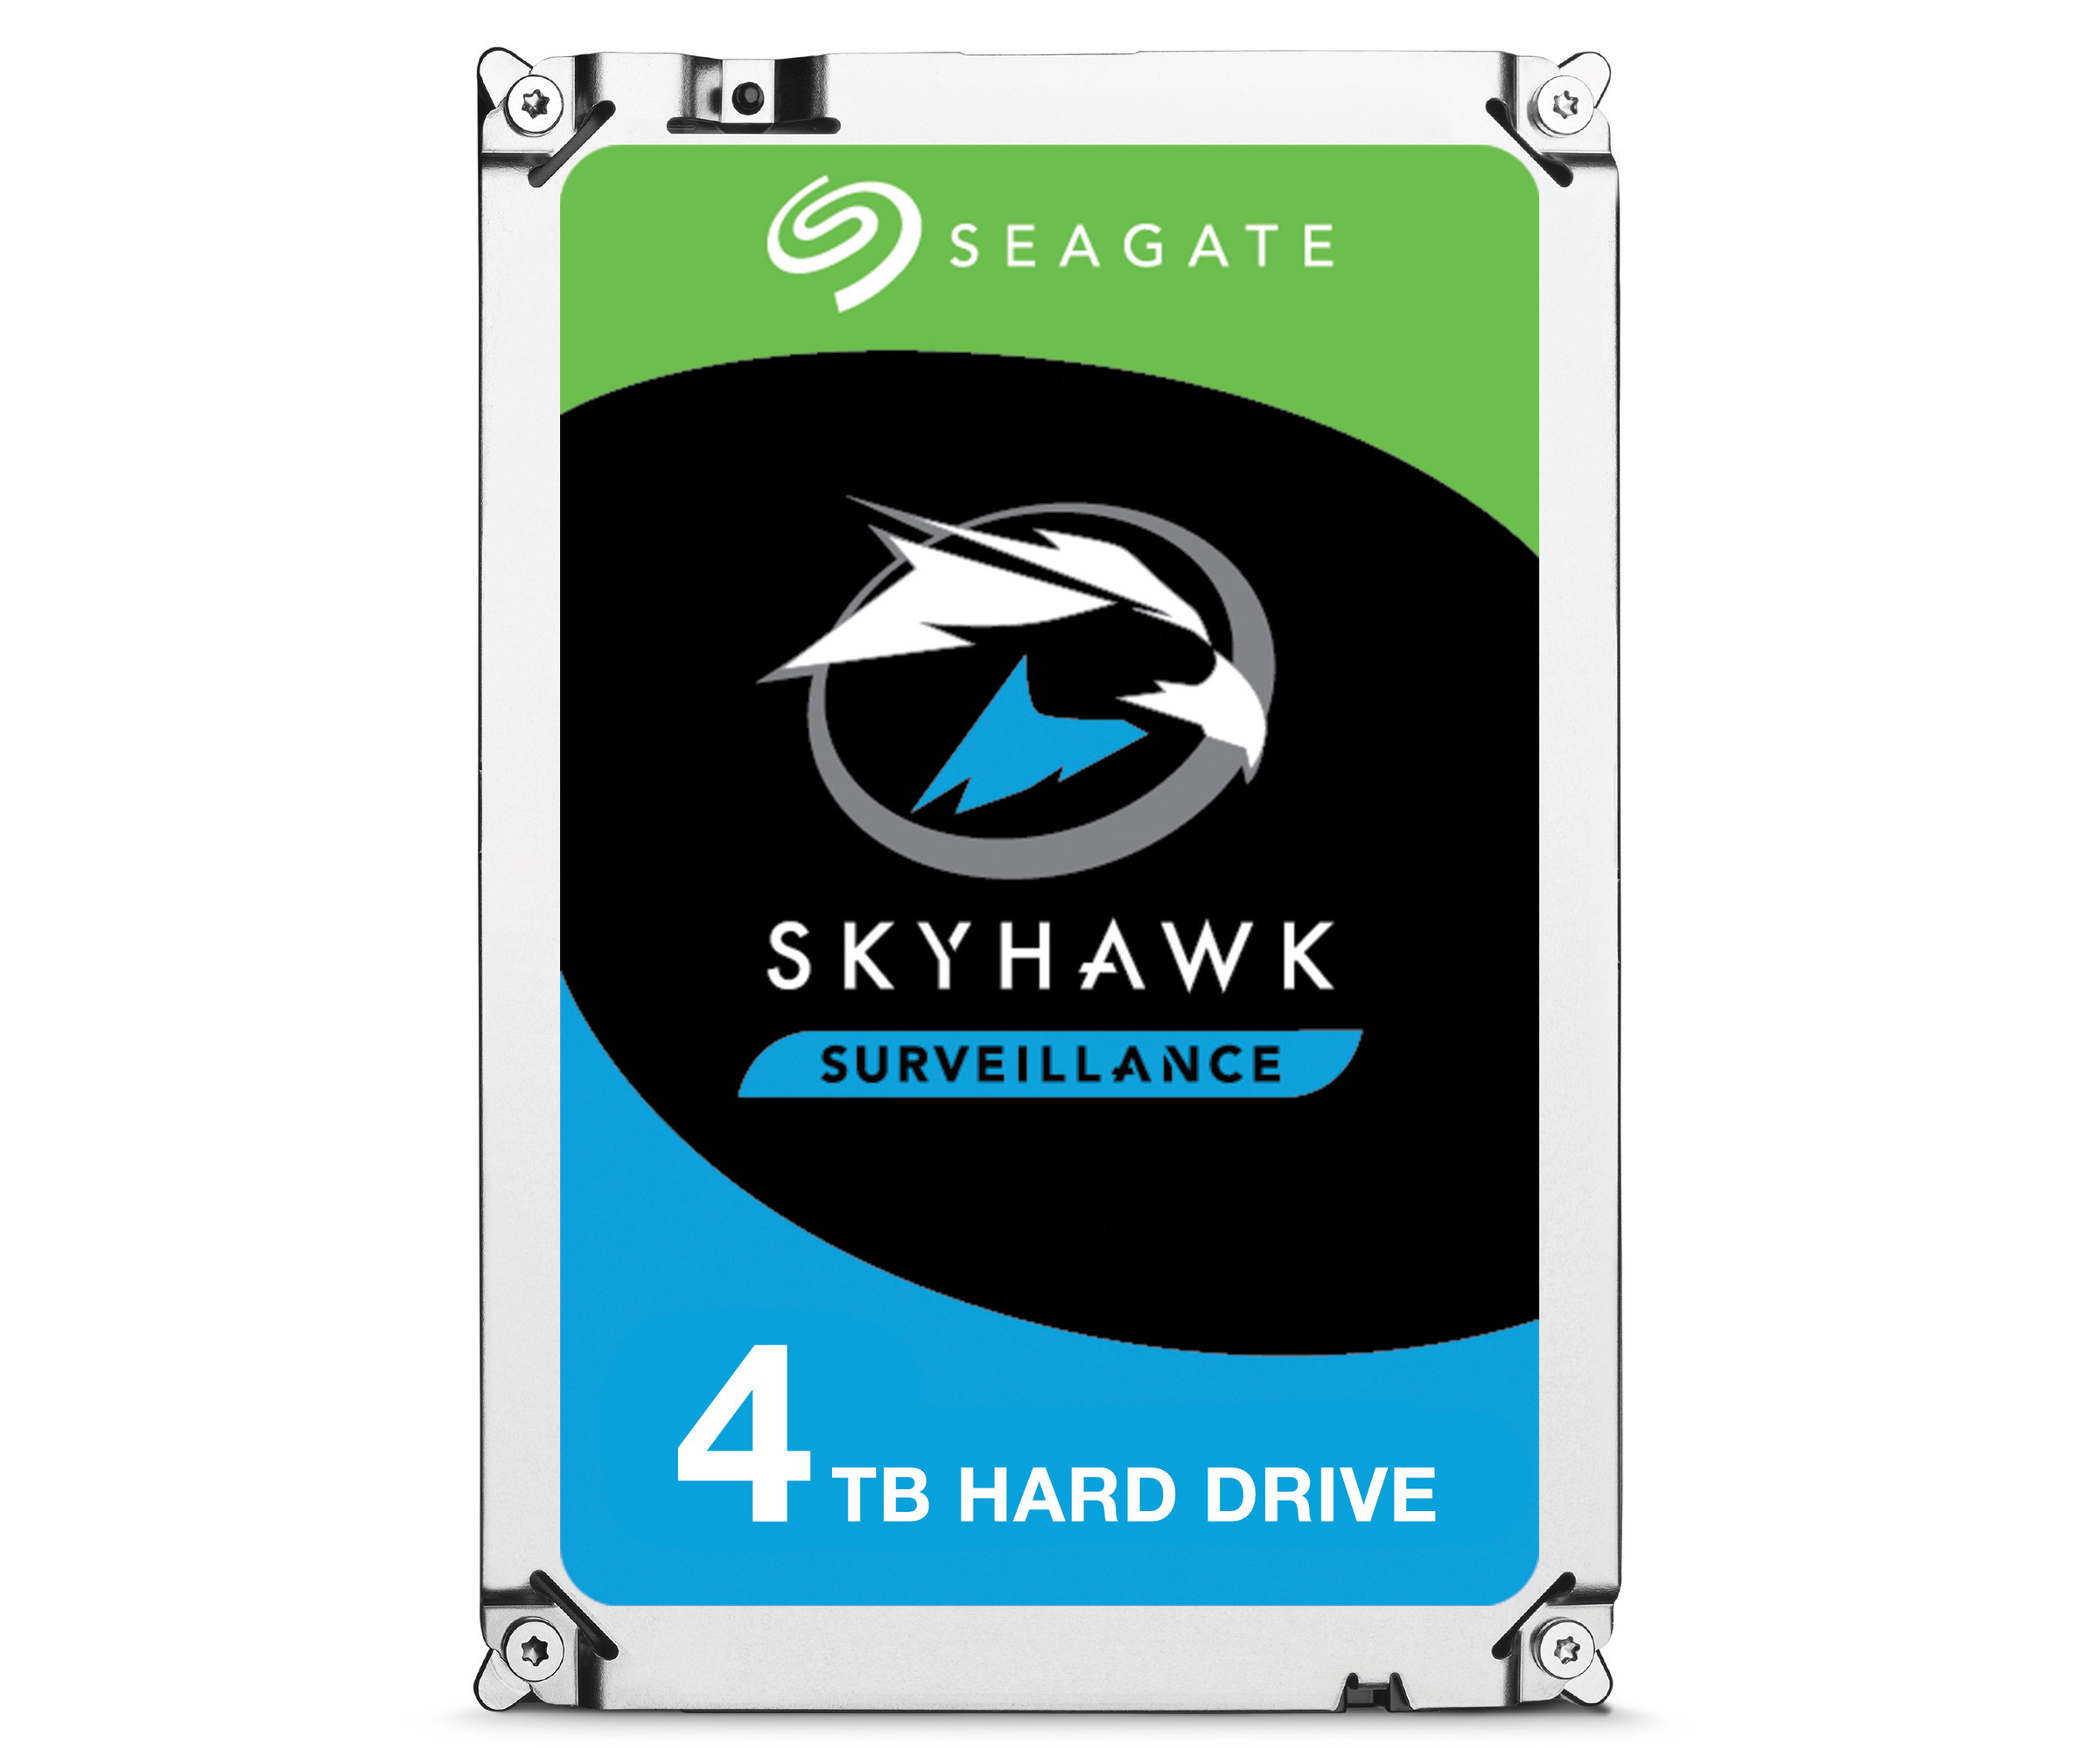 Seagate SkyHawk Surveillance HDD ST4000VX007 - Festplatte - 4 TB - SATA 6Gb/s - Puffer: 64 MB